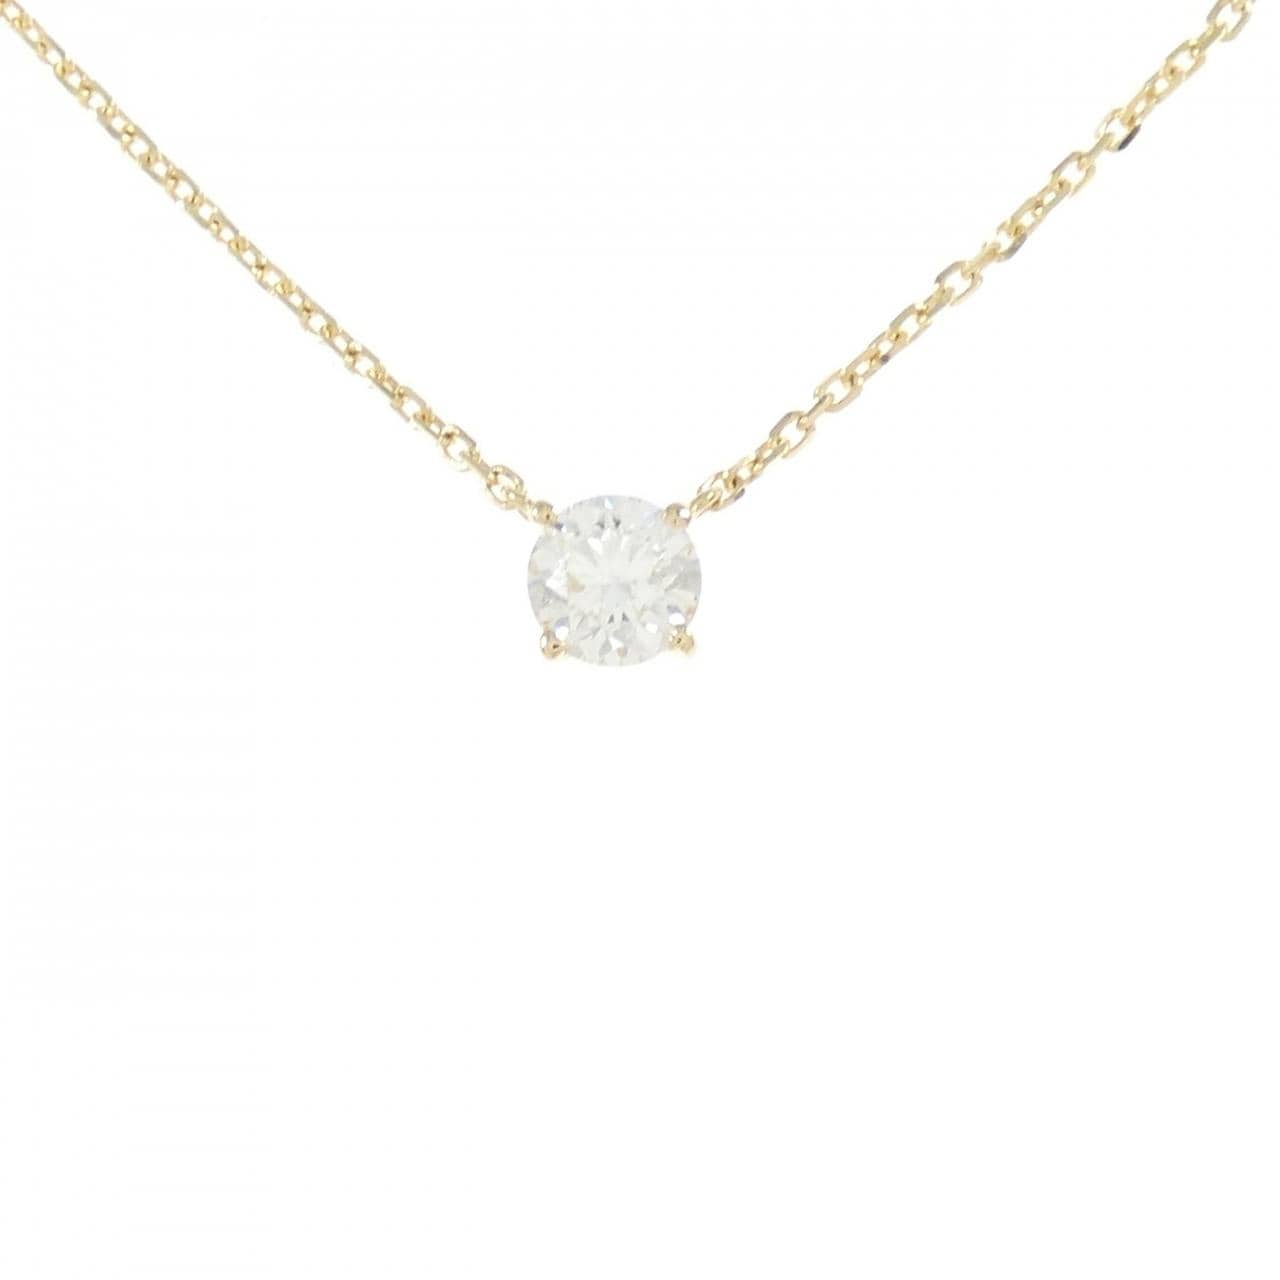 K18YG Diamond Necklace 0.5CT G VS2 EXT